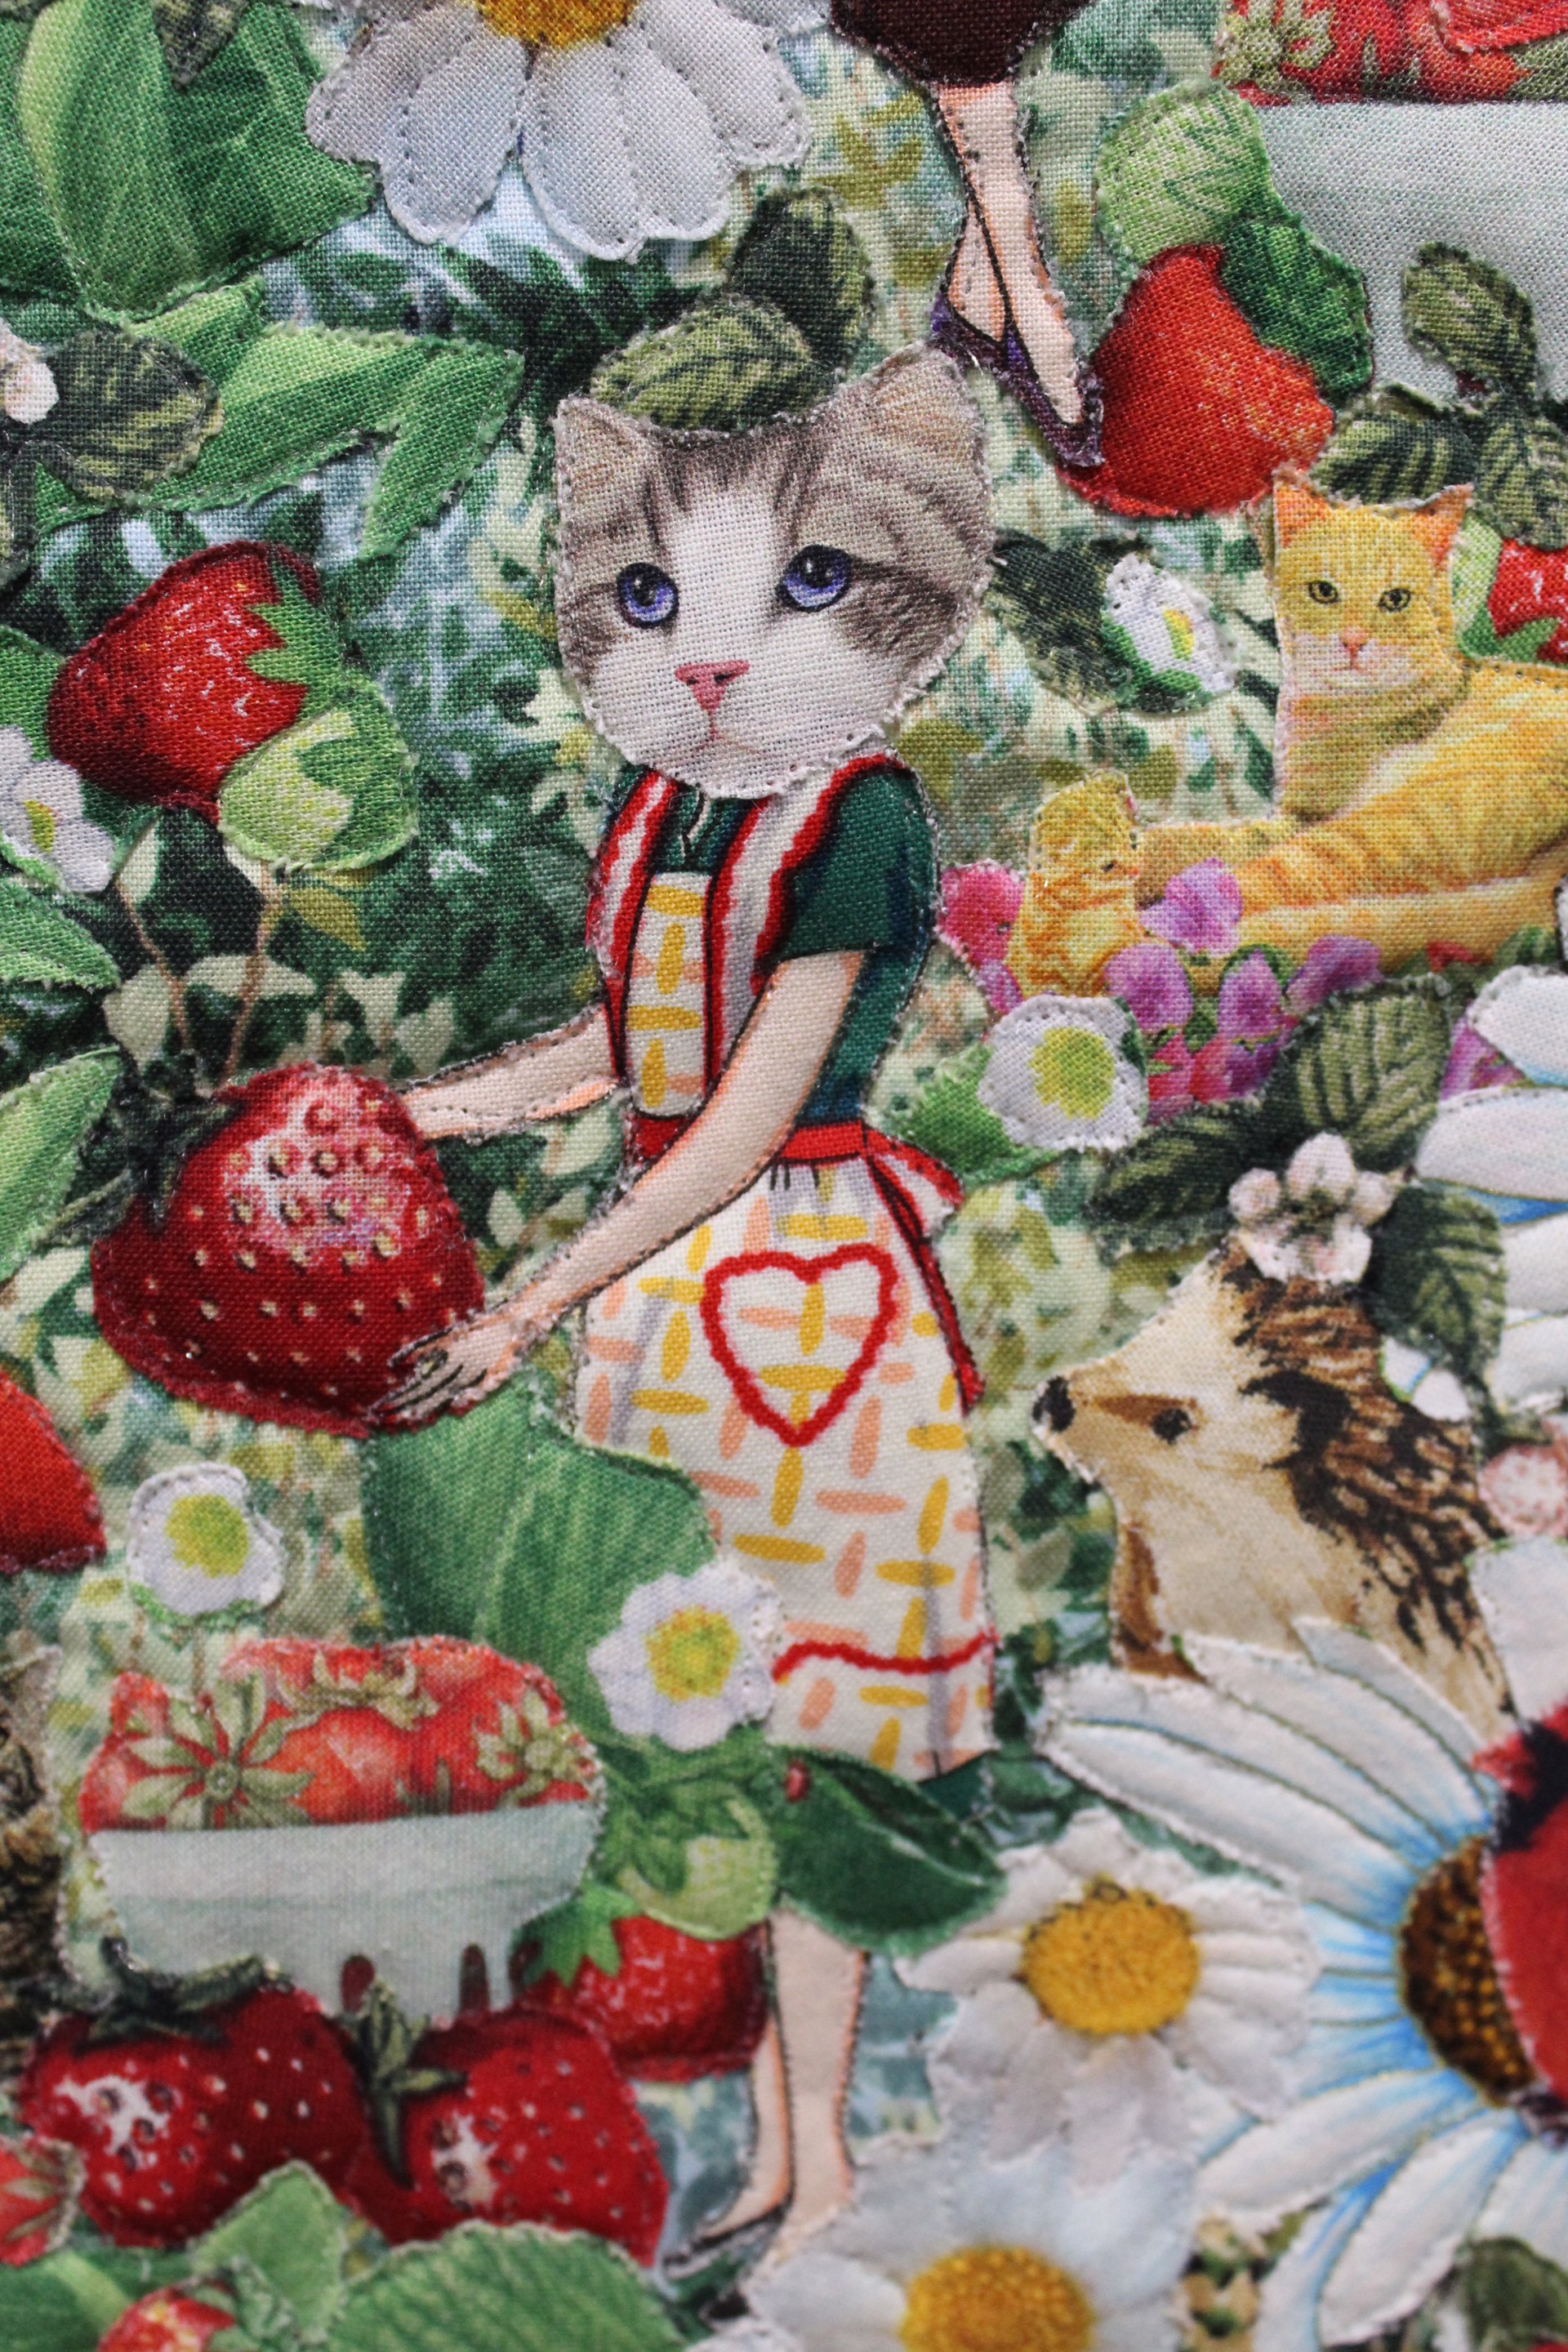 Strawberry Catgirlfriends by Jane Tardo